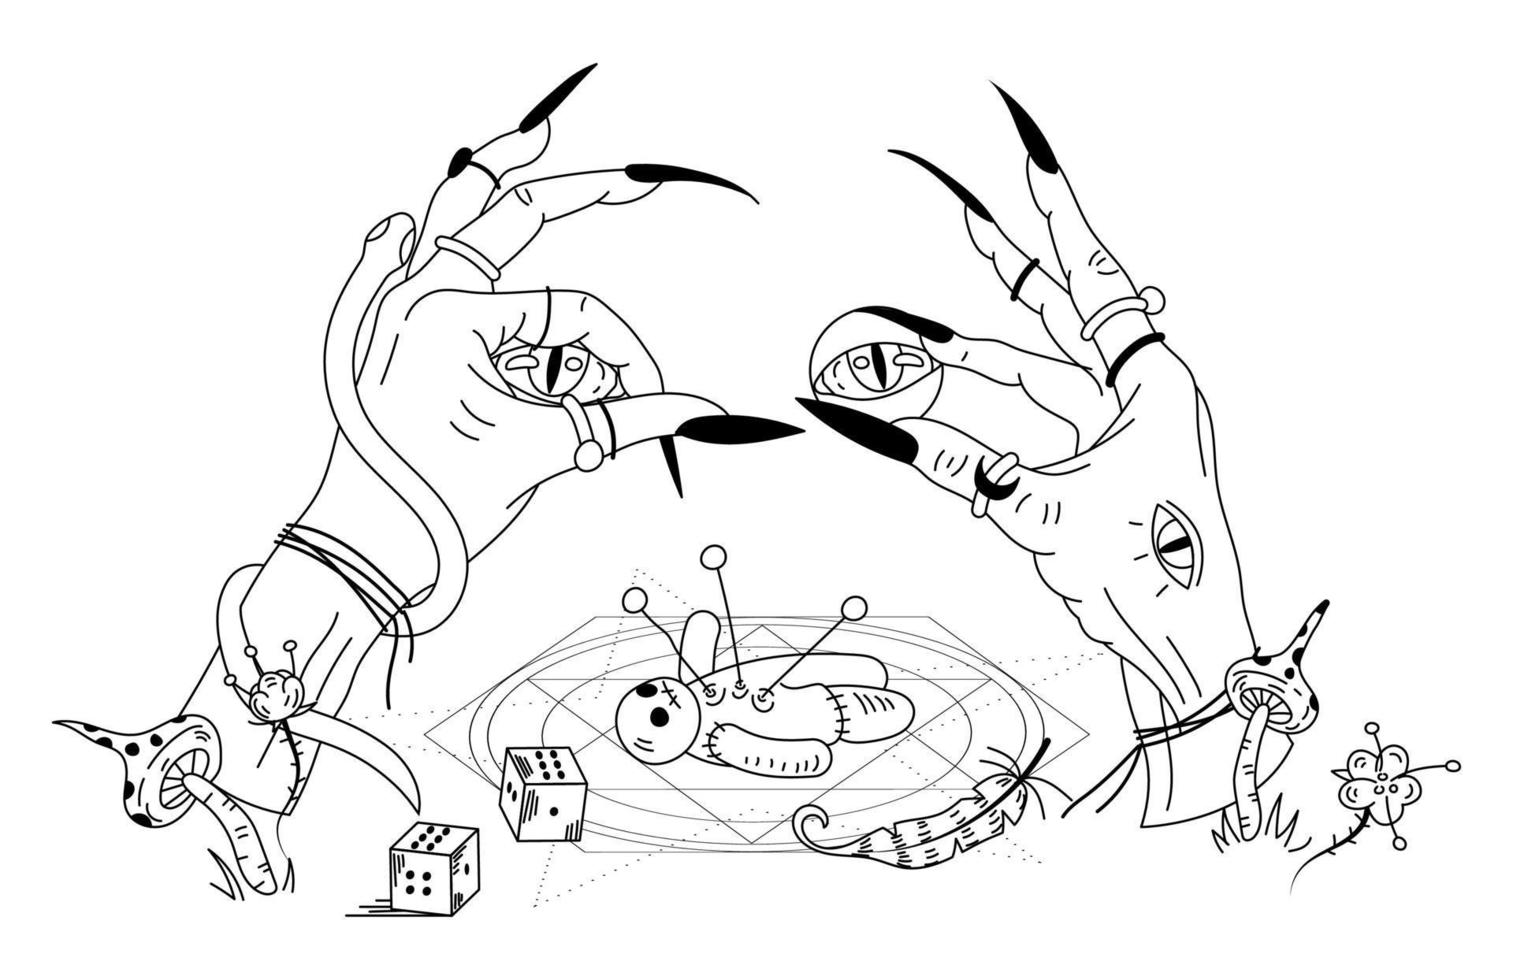 häxhänder och voodoodocka. mystiska handritade doodle vecton illustration vektor